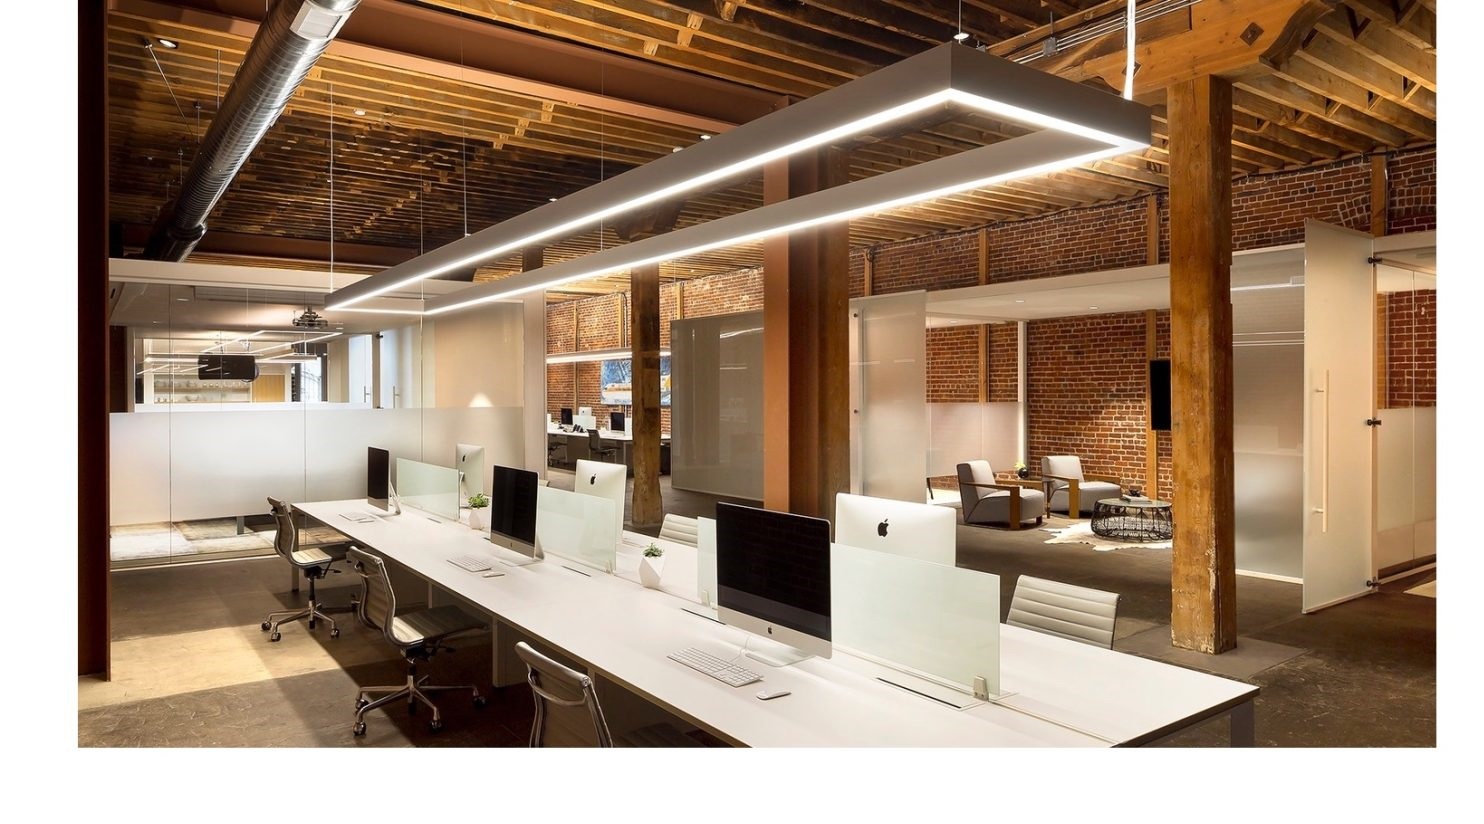 اصول نورپردازی دفتر کار + اهمیت و مزایای آن در محیط های اداری